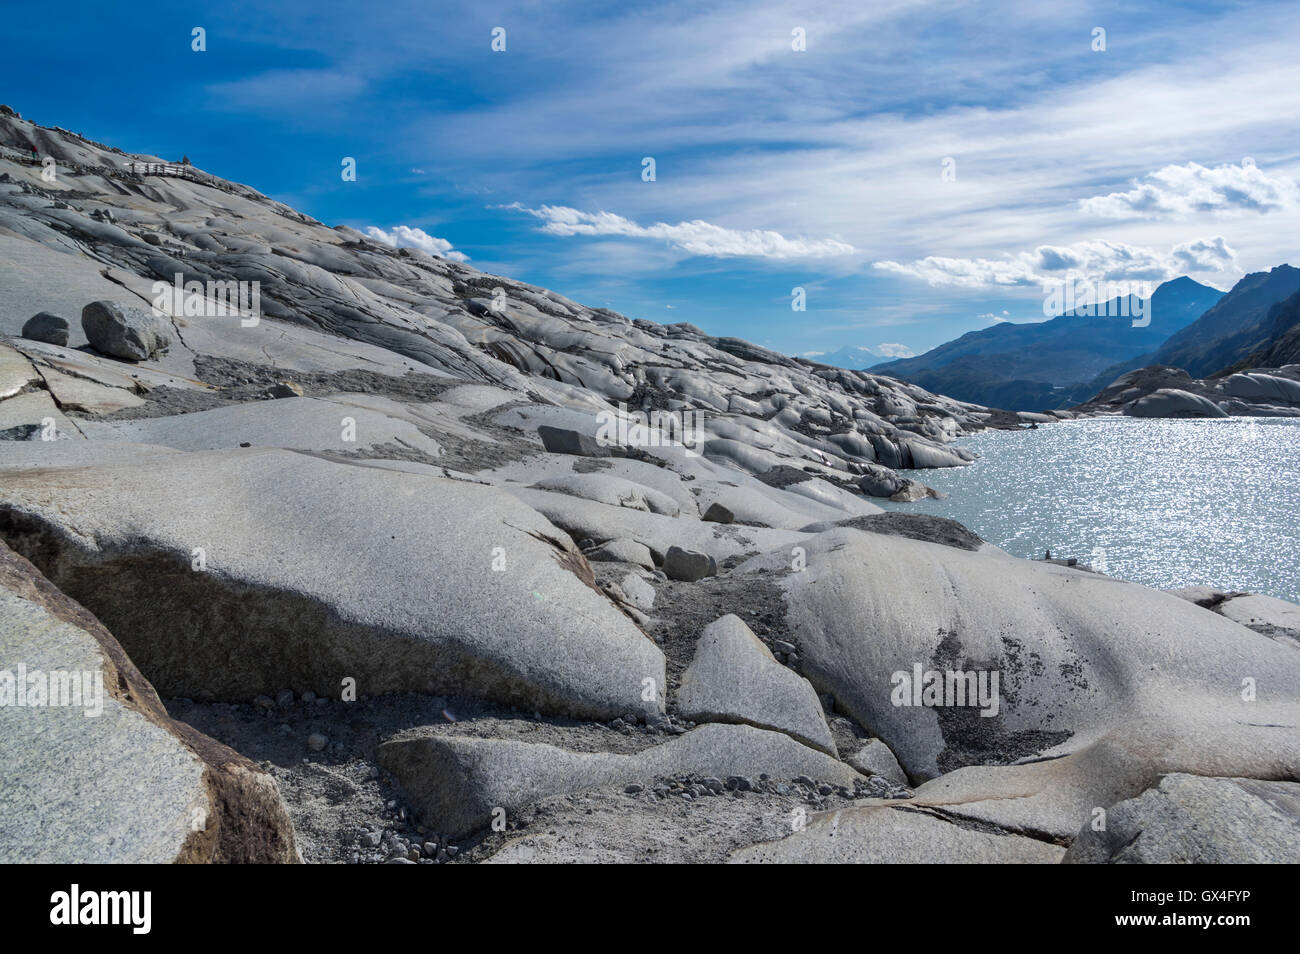 Estrías glaciales debido a la abrasión en la roca cerca del Ródano glaciar de los Alpes Suizos. Foto de stock